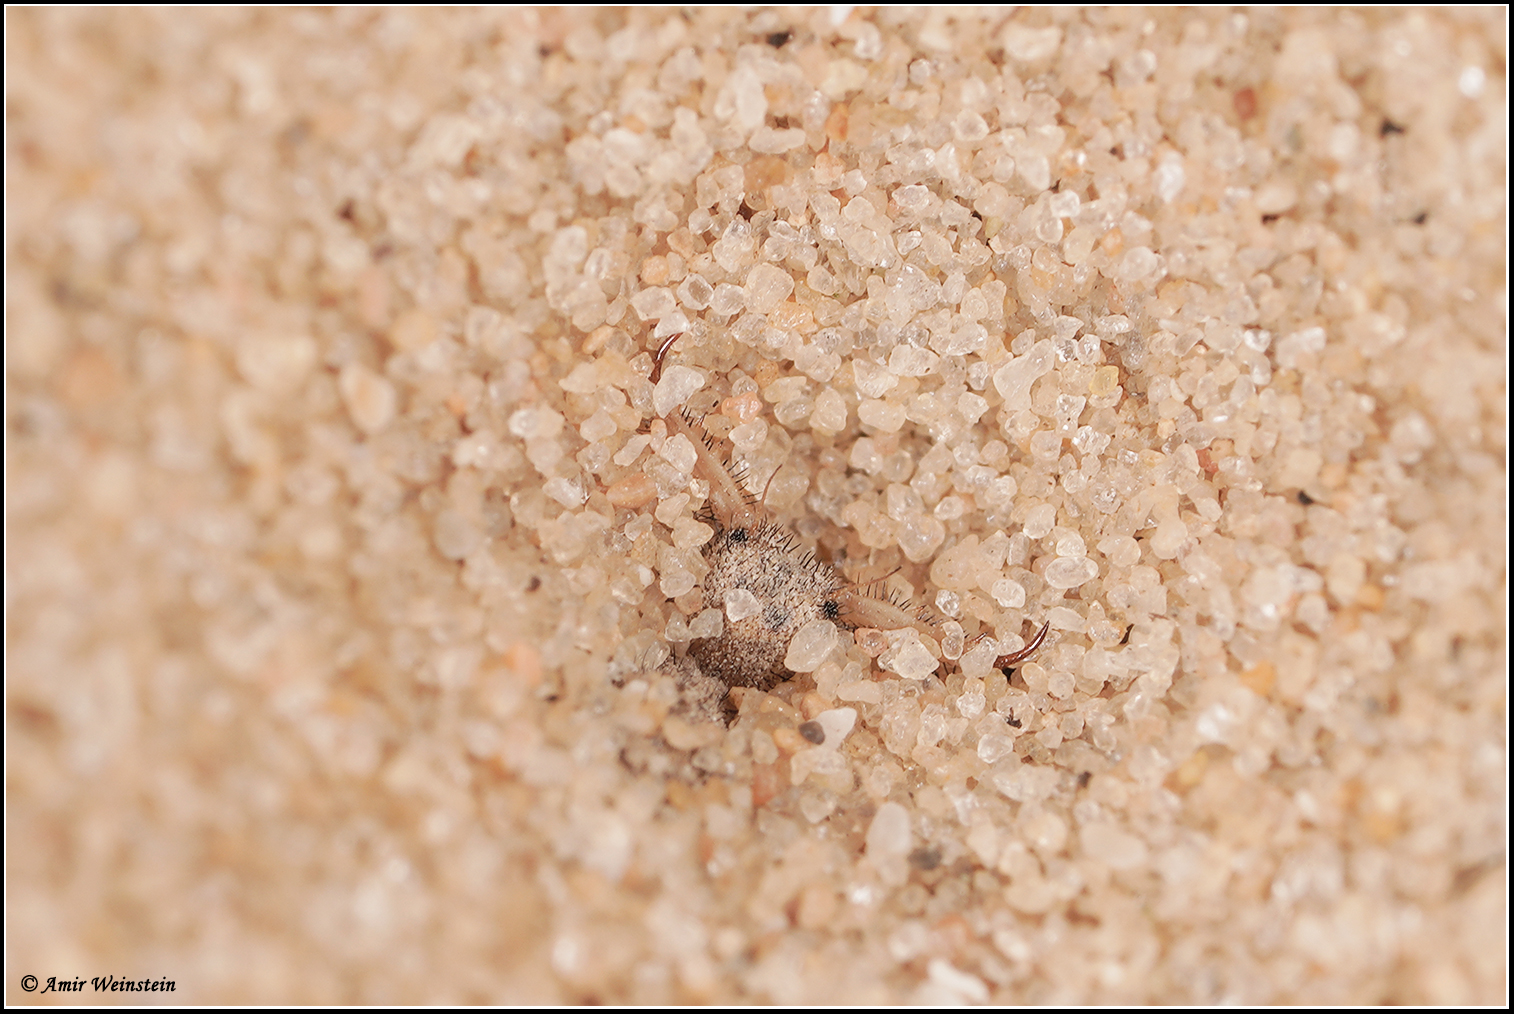 זחל של ארינמל חיוור Myrmeleon hyalinus אורב בתחתית משפך בקרקע חול עם גרגר גס.